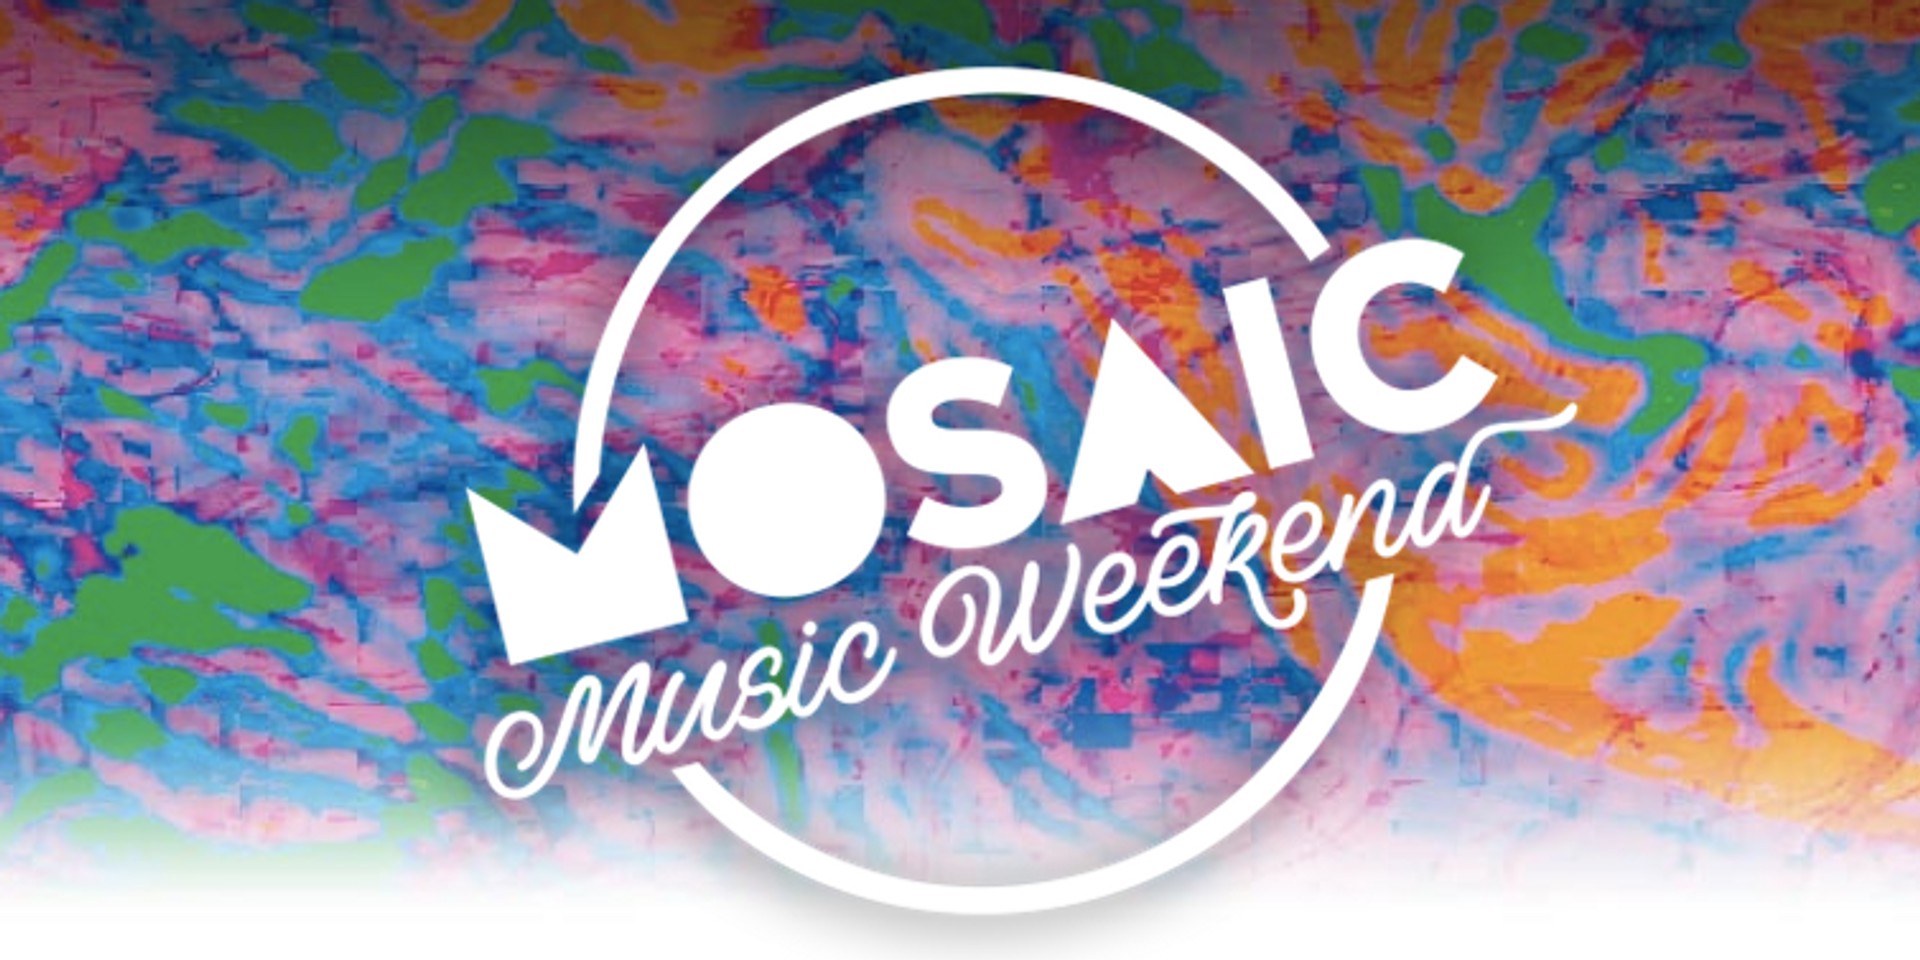 Esplanade brings back Mosaic in 2016, introduces Mosaic Music Weekend